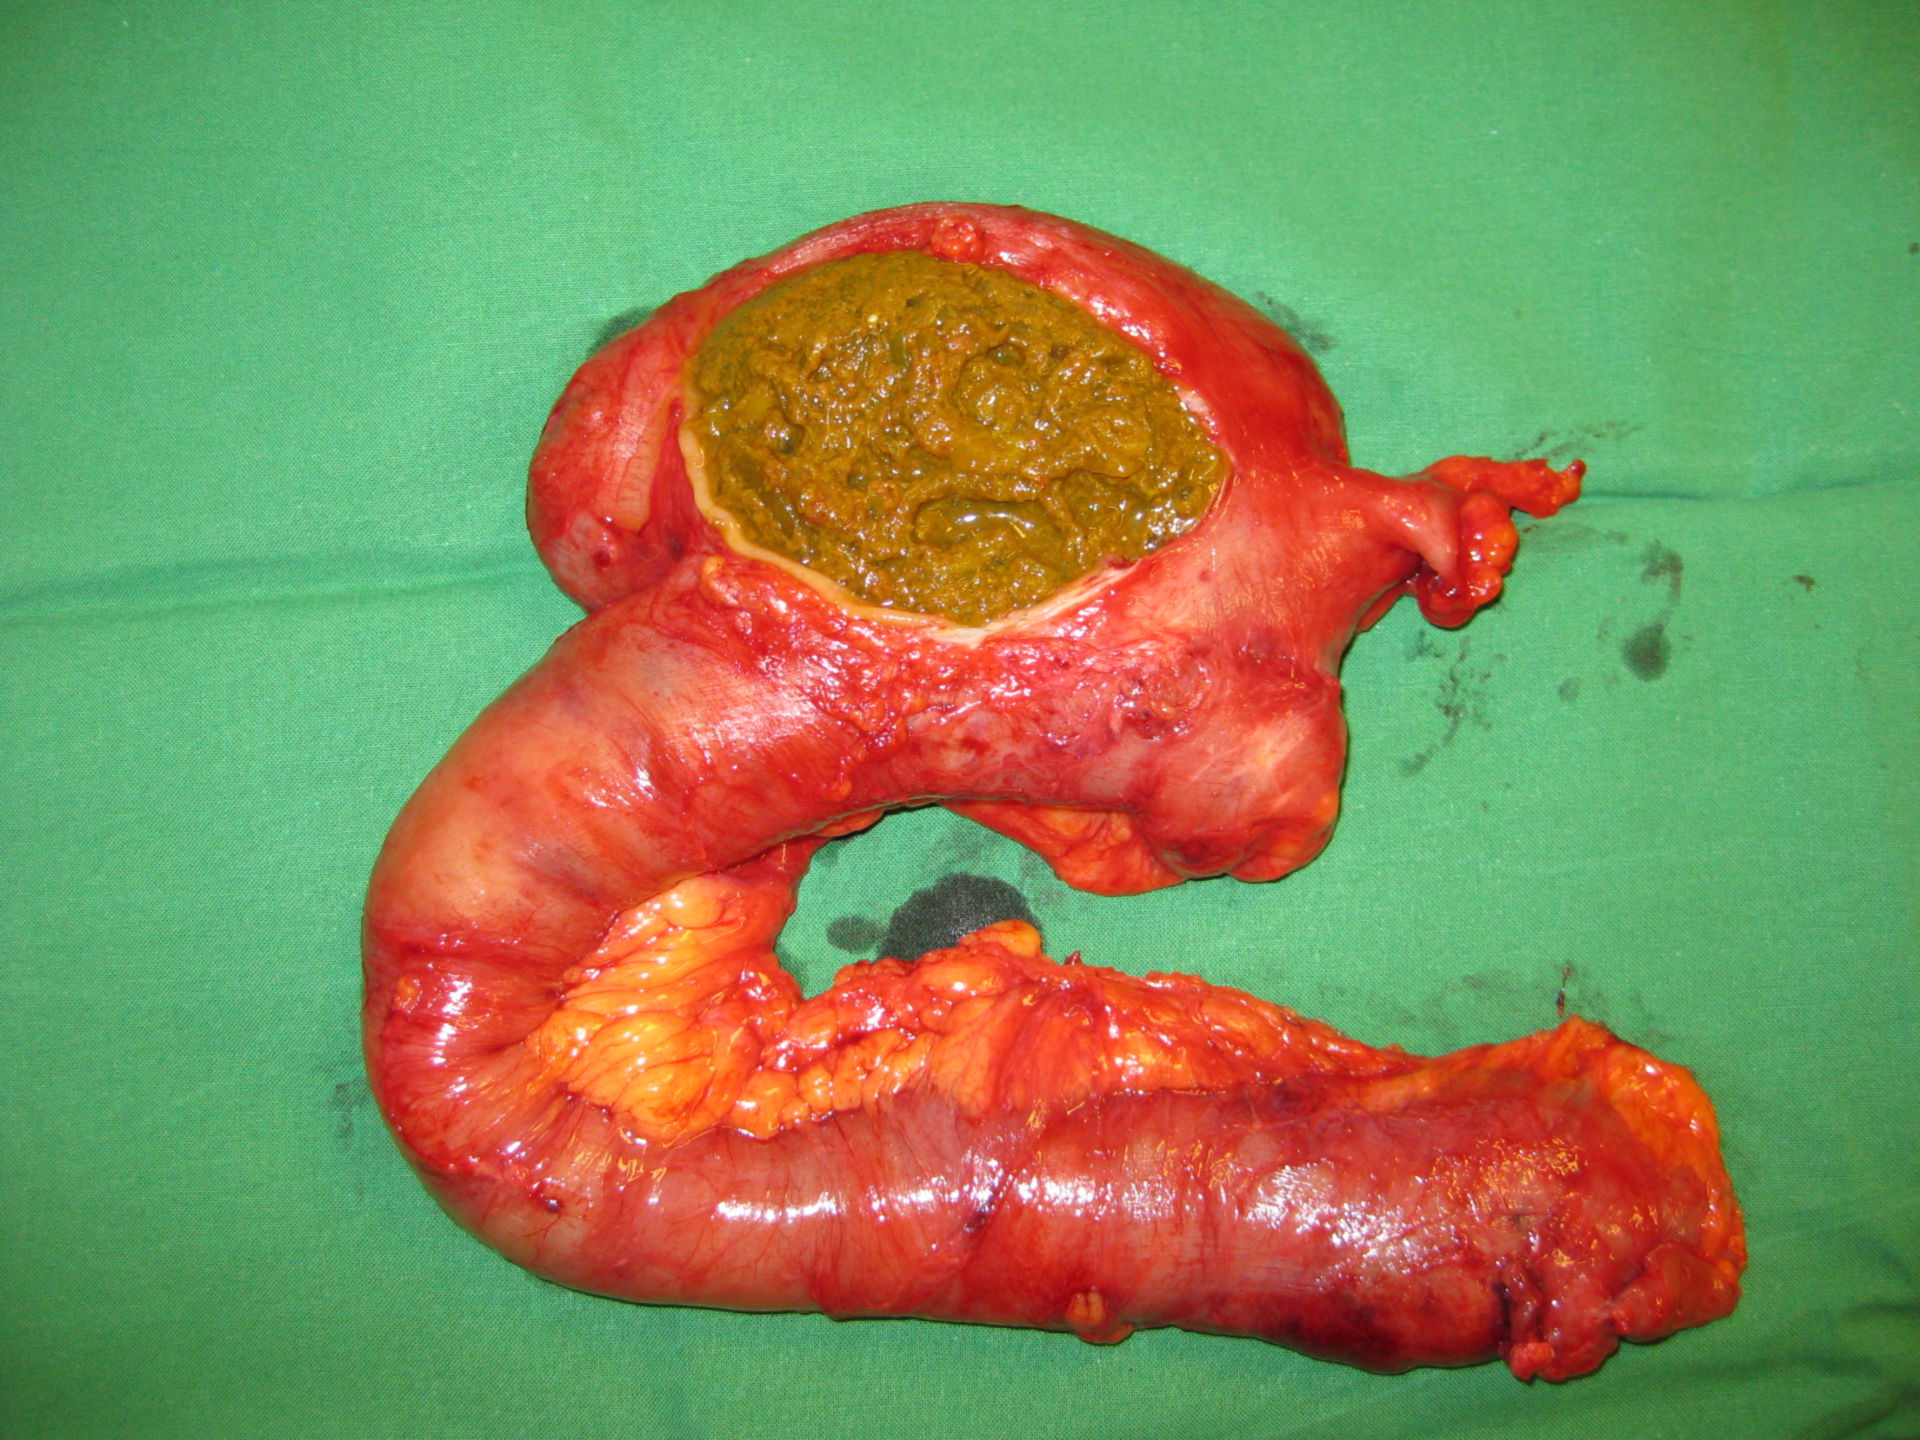 La obstrucción del intestino debido a la cáscara de la fruta indigesta - fitobezoar